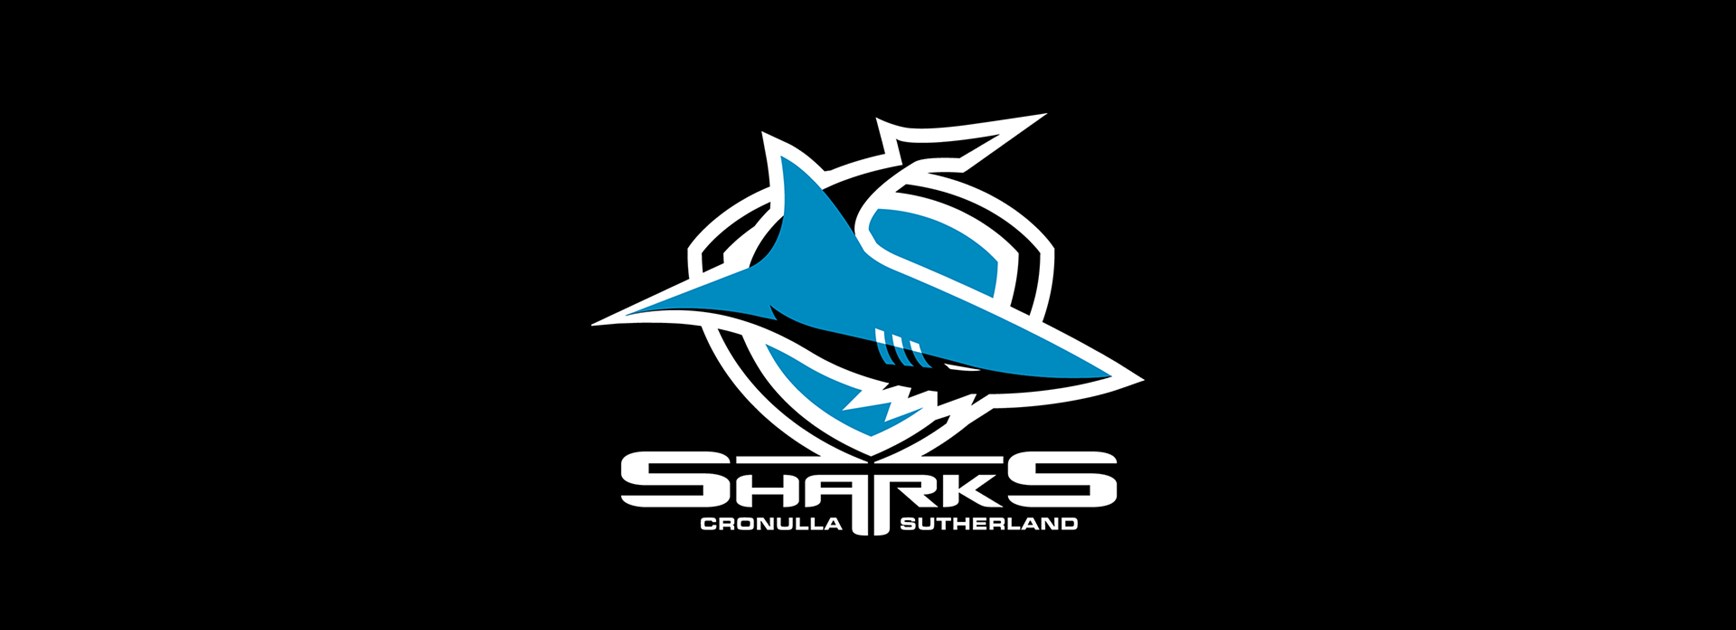 Sharks Statement